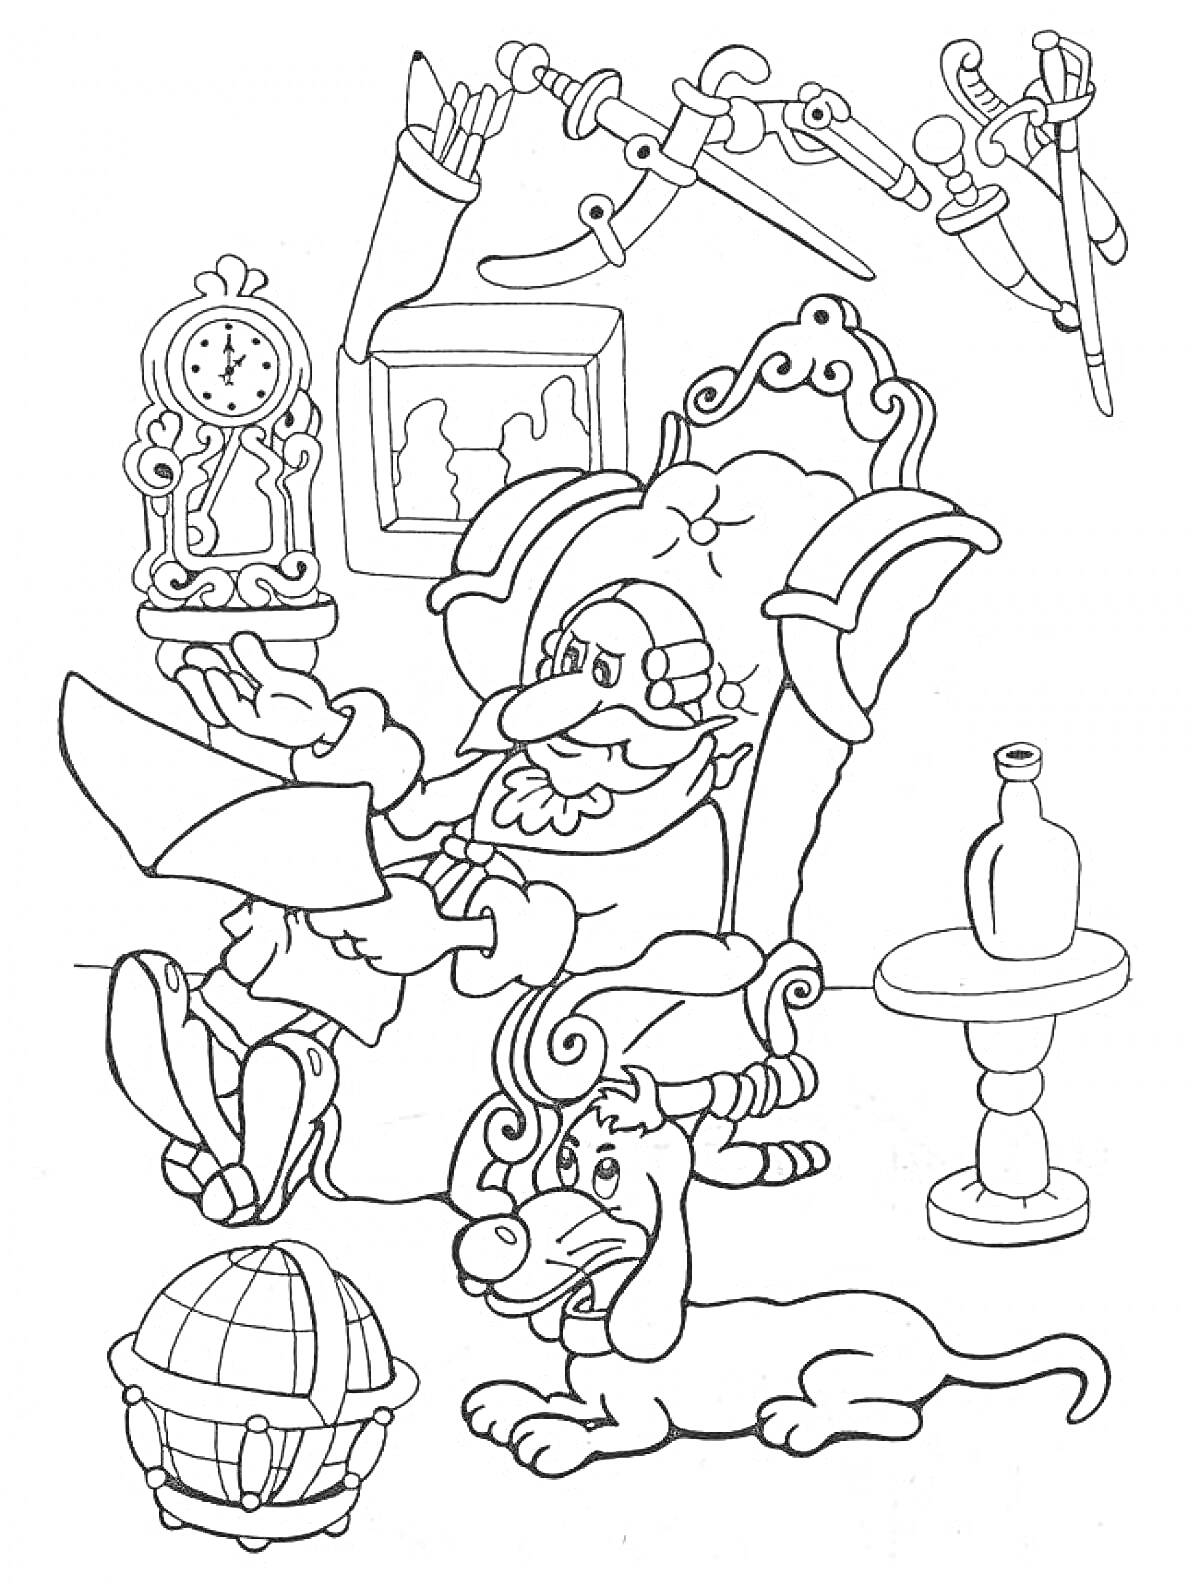 Раскраска Барон Мюнхгаузен сидит в кресле с собакой, держа карту и окруженный часами, бутылкой на столе, глобусом и мечами на стене